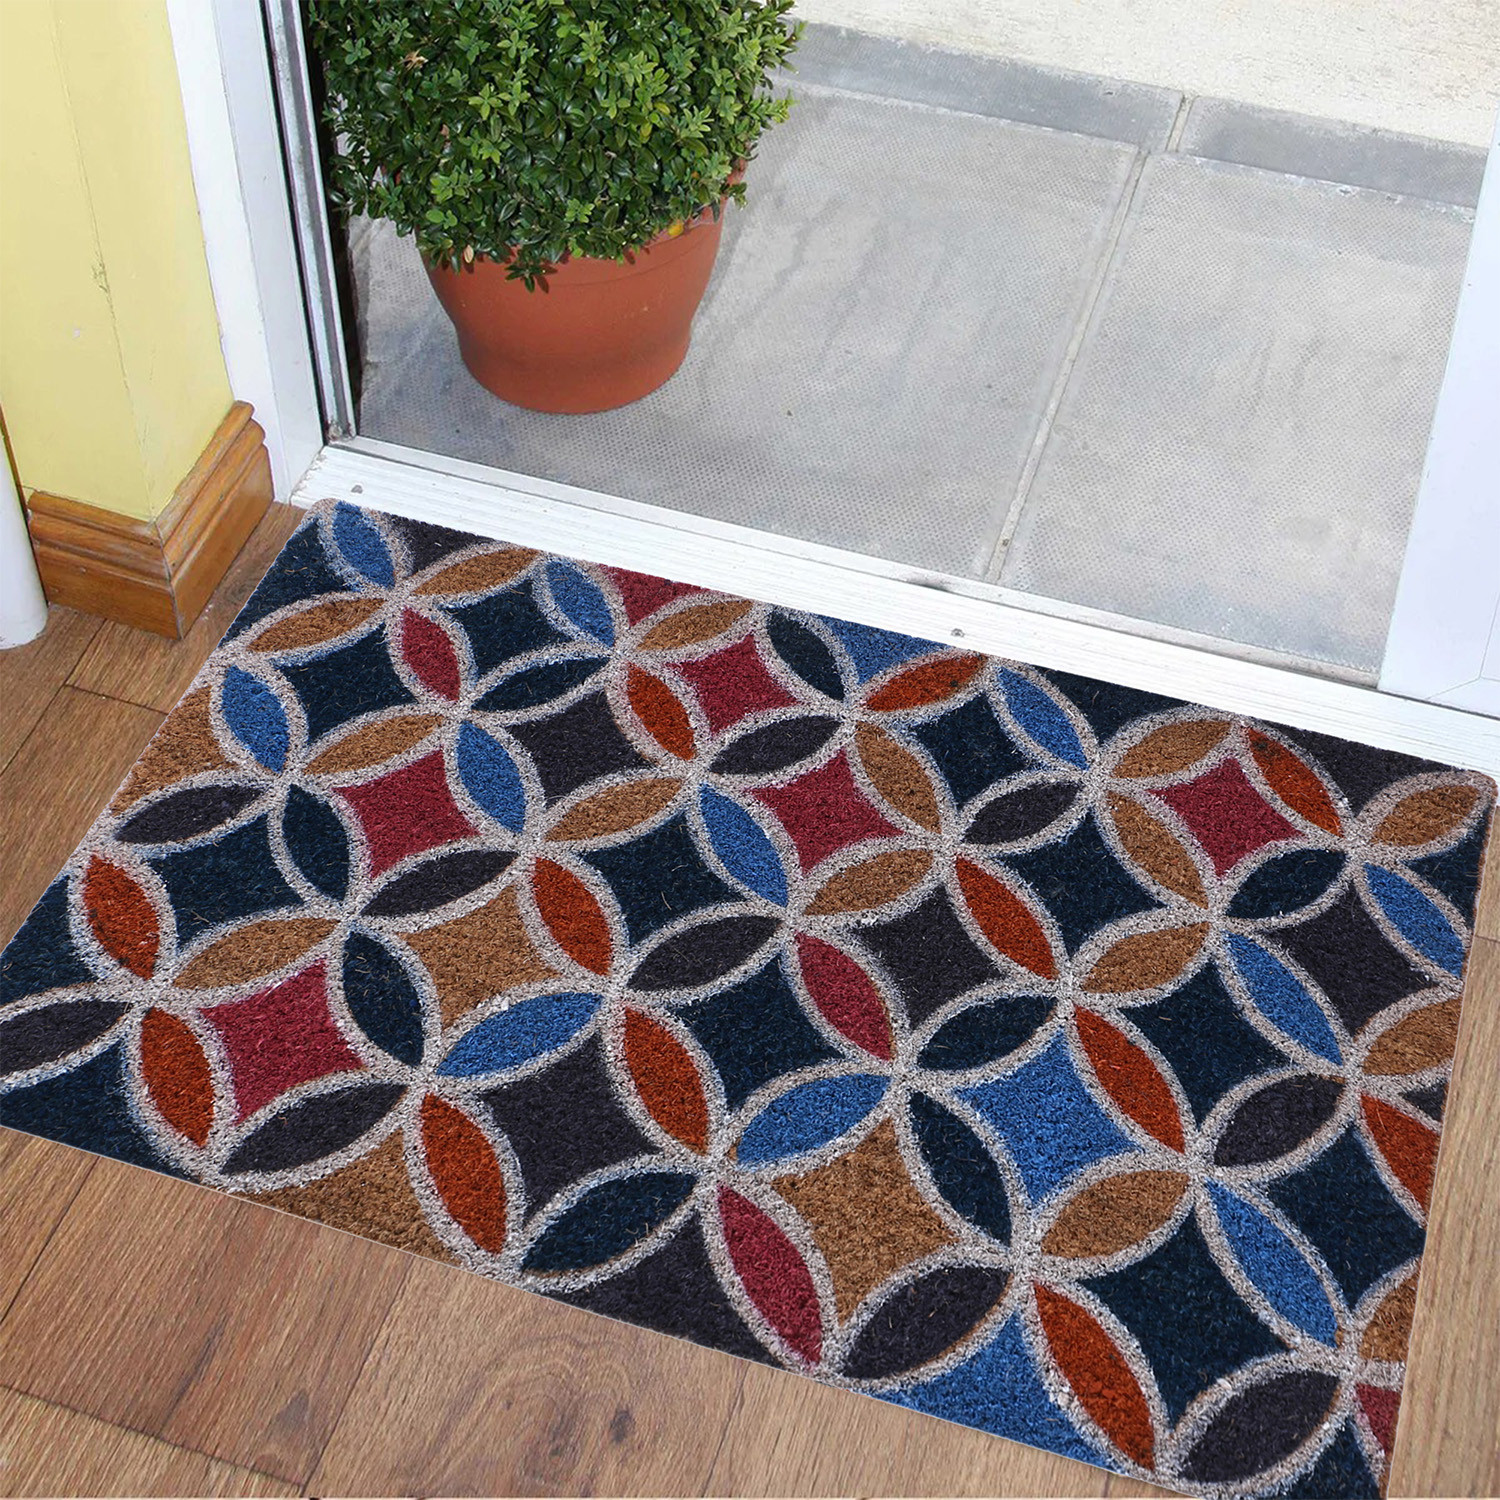 Kuber Industries Door Mat|Polyethylene Durable & Anti-Slip Natural Floral Print Floor Mat|Rug For Indoor or Outdoor, 30x20 Inch (Brown)